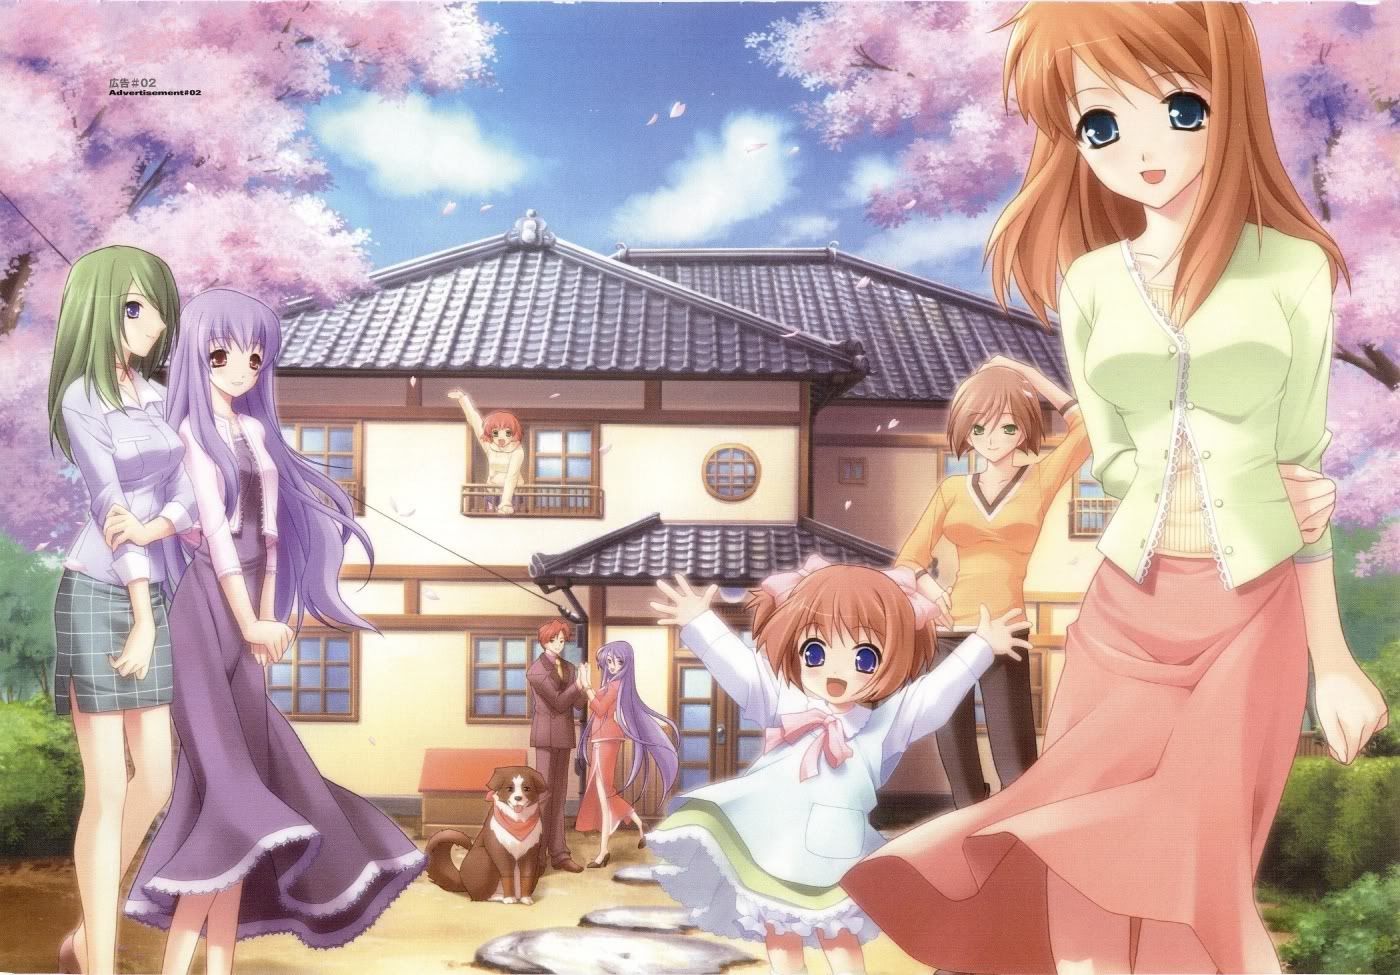 Anime Family Photo by Automatic_PWNage | Photobucket